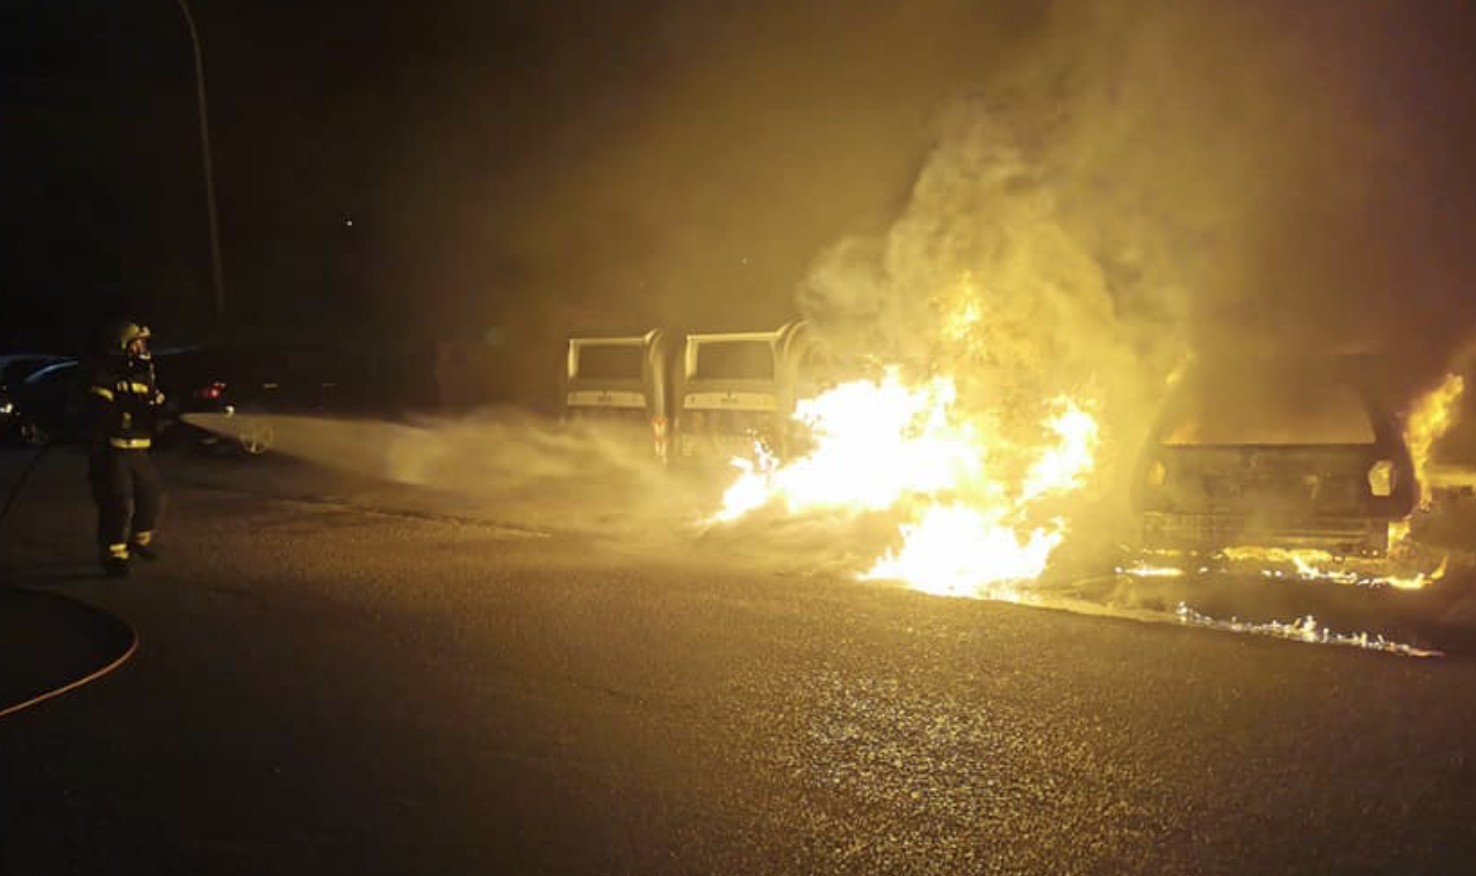 Tensión en La Línea, ante la oleada de disturbios y vandalismo en La Atunara. BOMBEROS DE LA LÍNEA